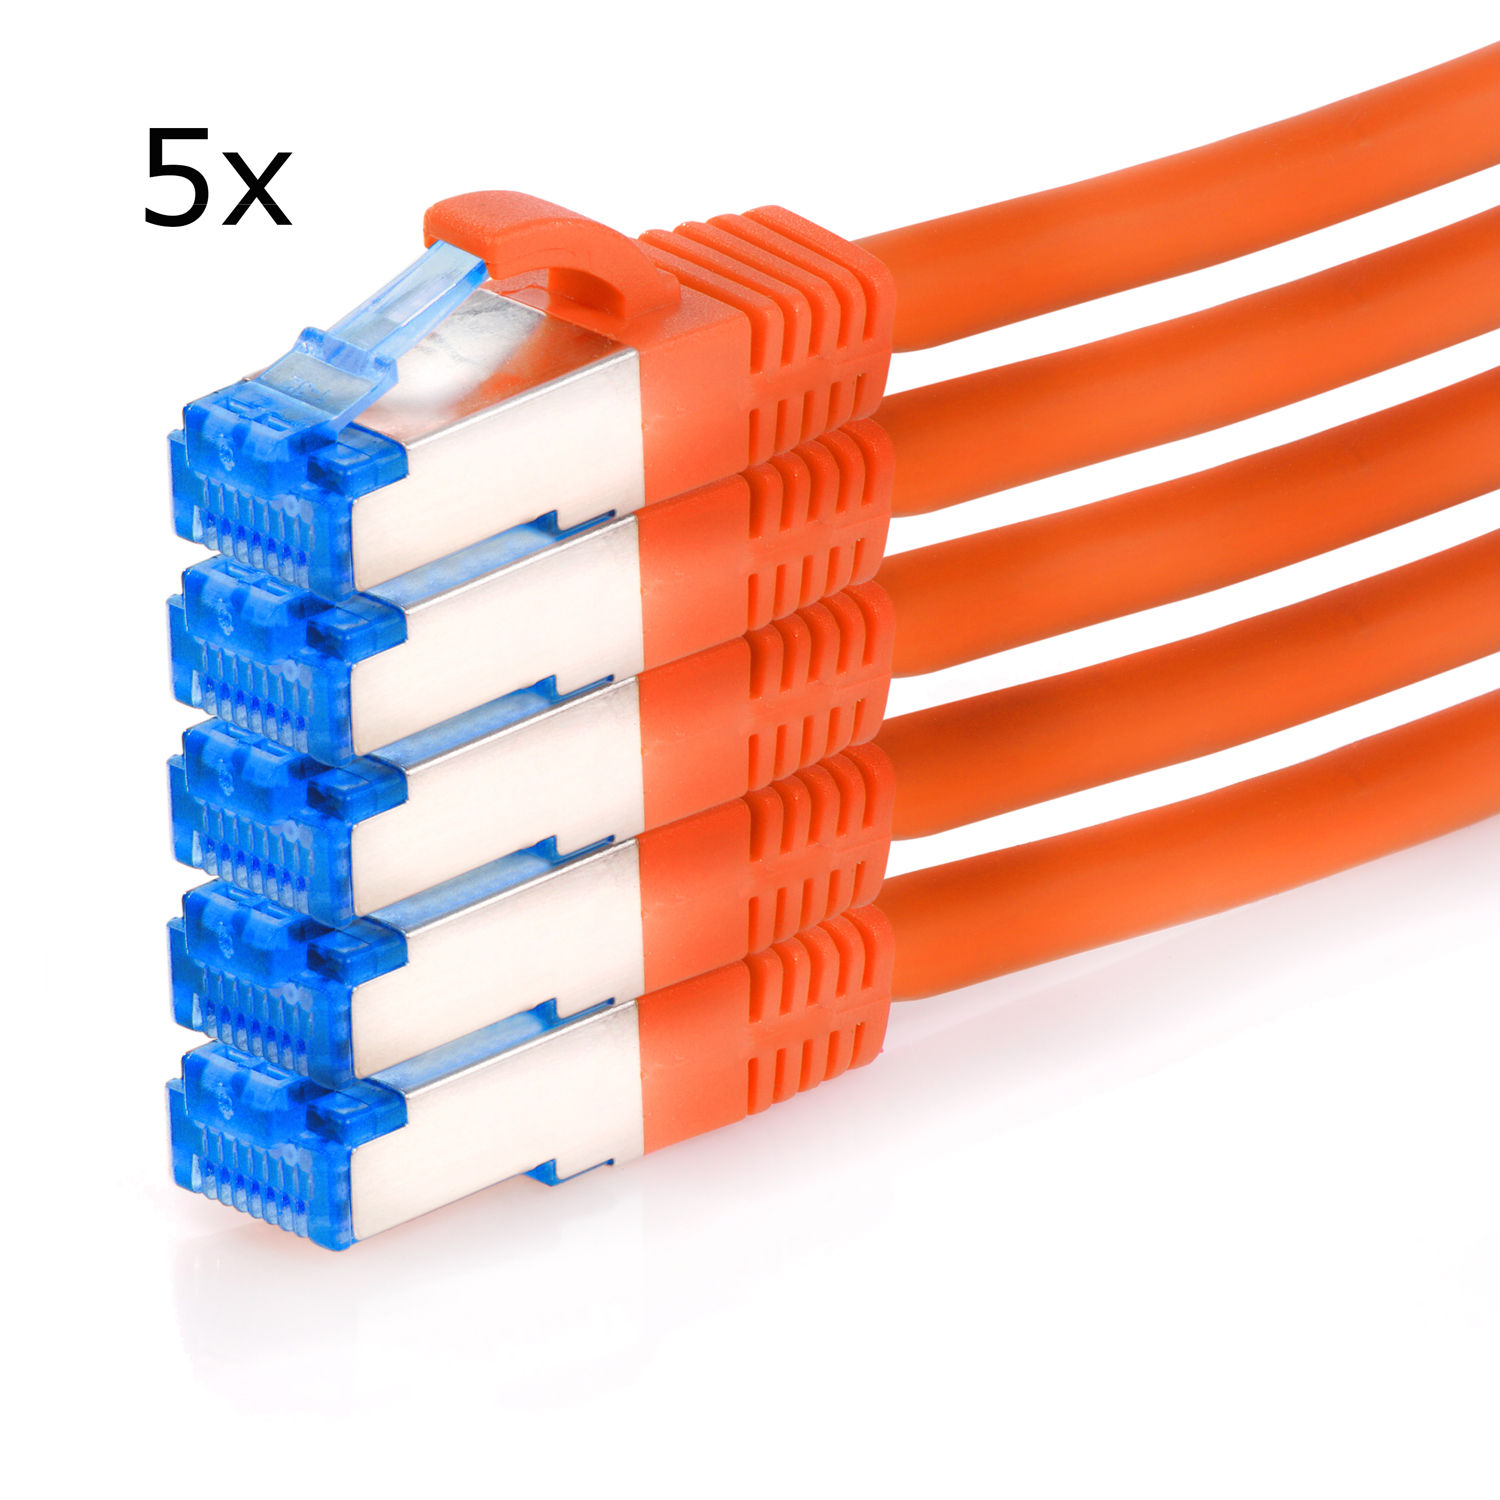 10GBit, / Netzwerkkabel, Netzwerkkabel Patchkabel Pack TPFNET 3 orange, 5er 3m m S/FTP